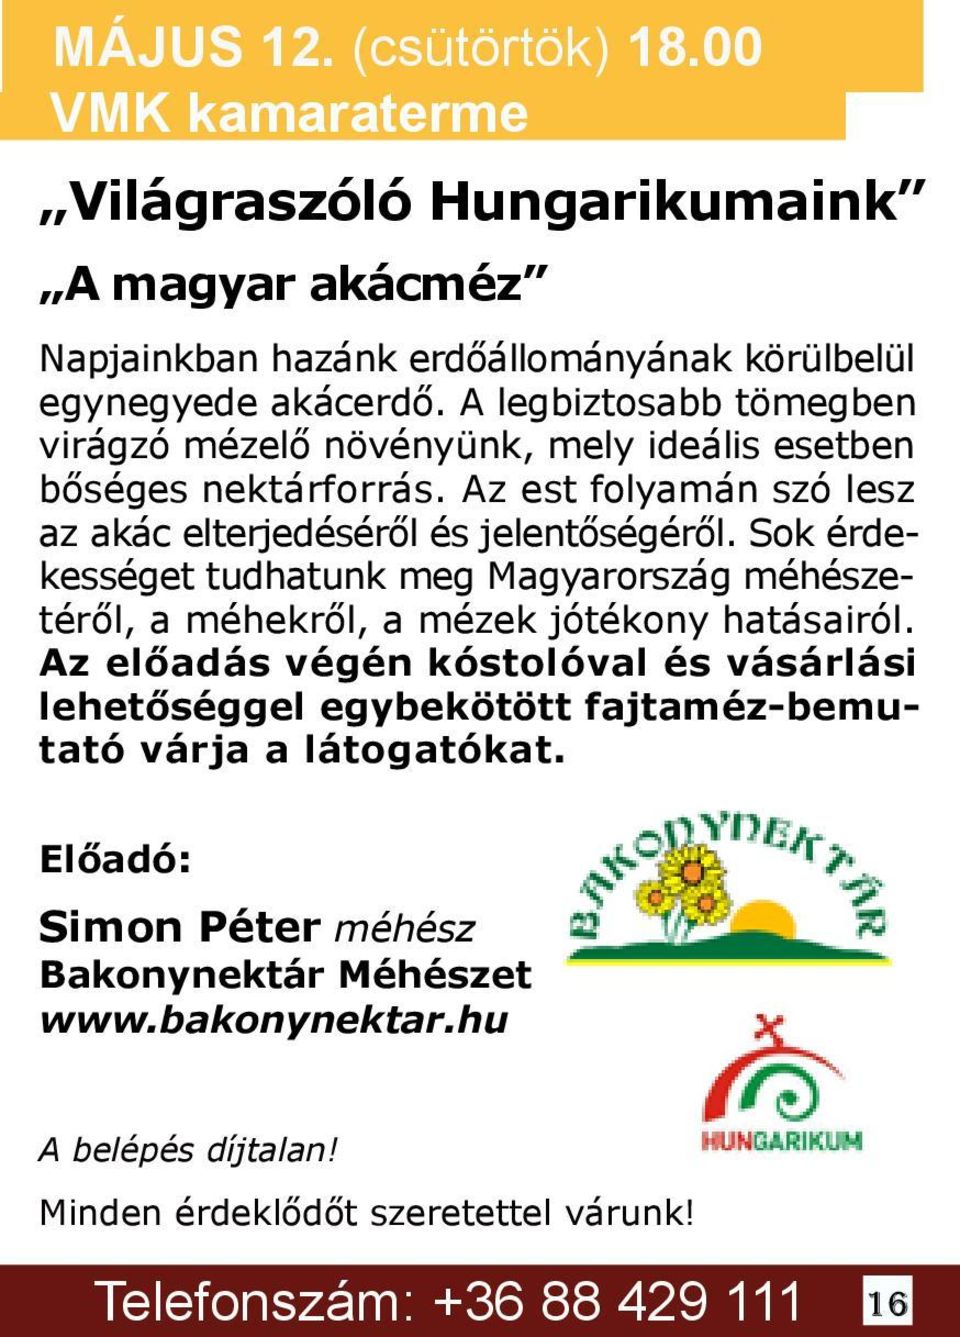 Sok érdekességet tudhatunk meg Magyarország méhészetéről, a méhekről, a mézek jótékony hatásairól.